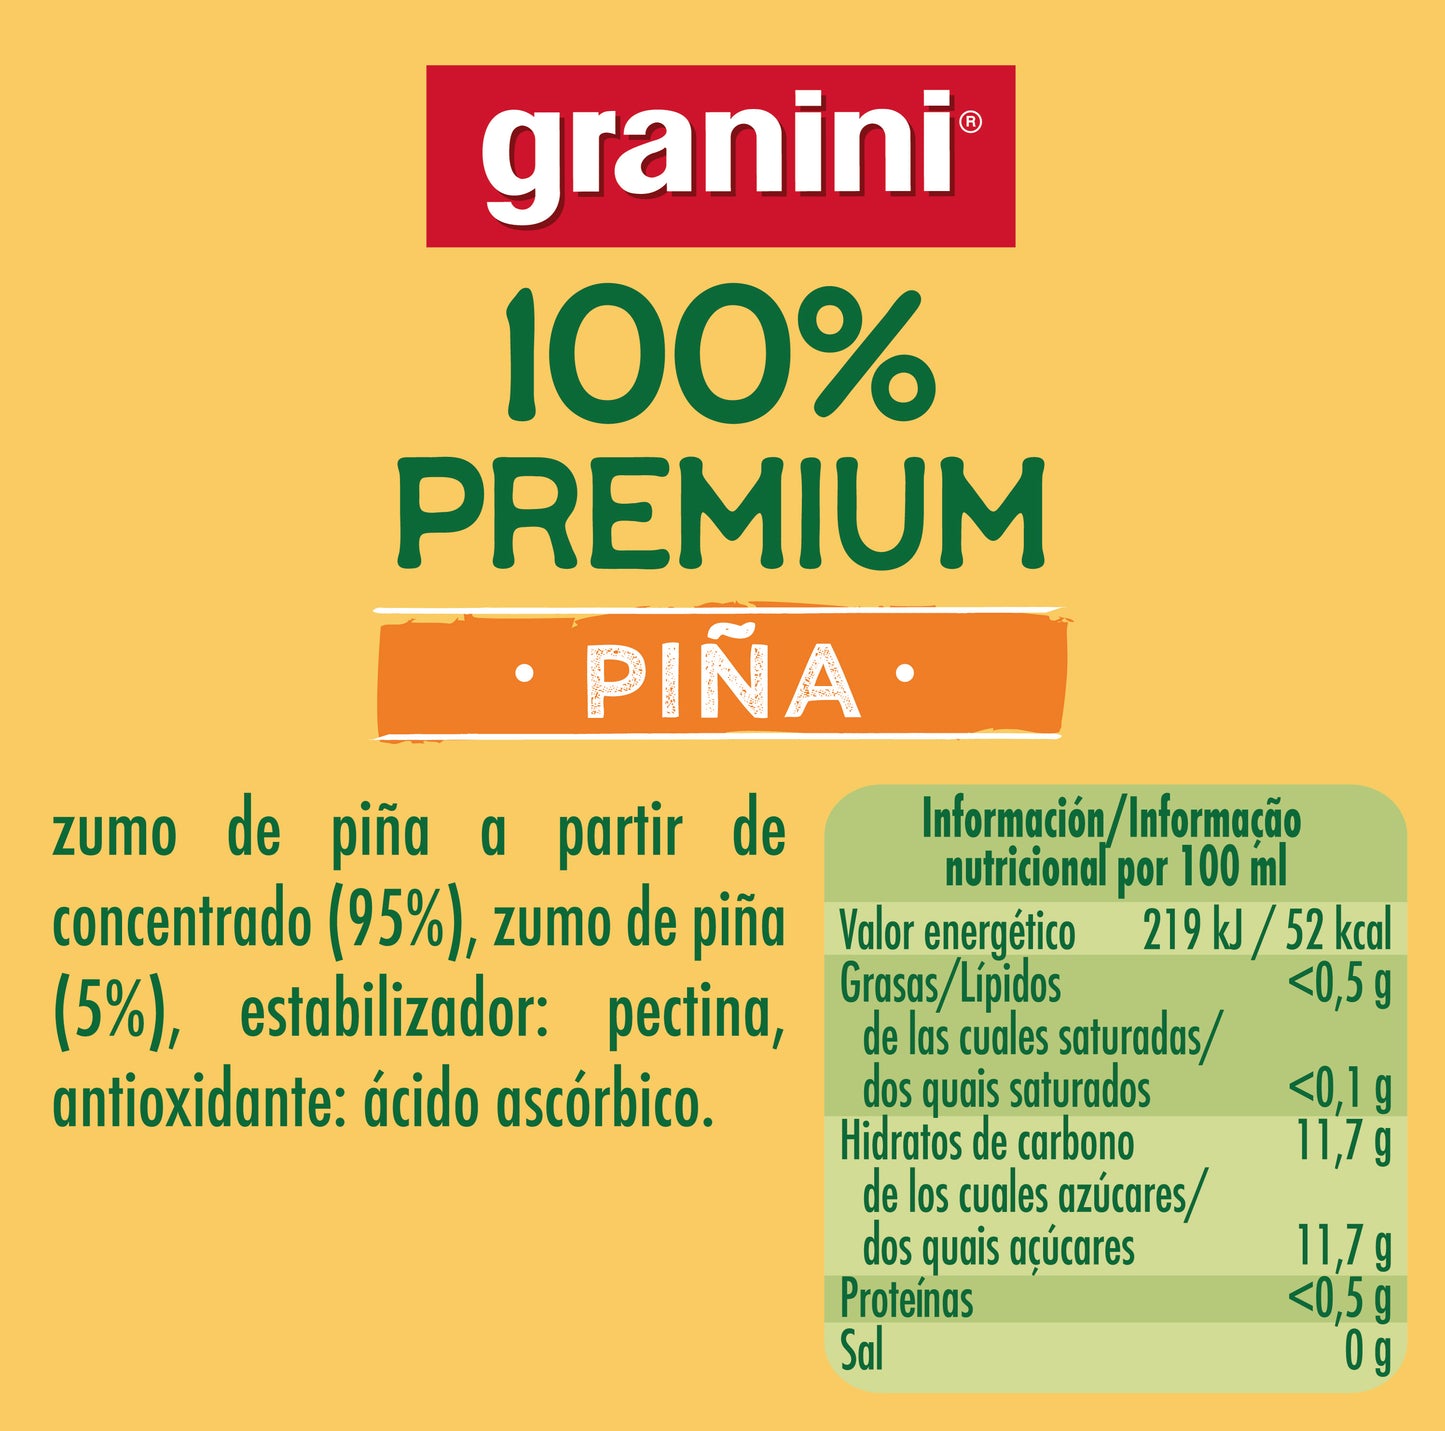 
                  
                    Piña - 100% Premium - Pack 6 (6x1L)
                  
                